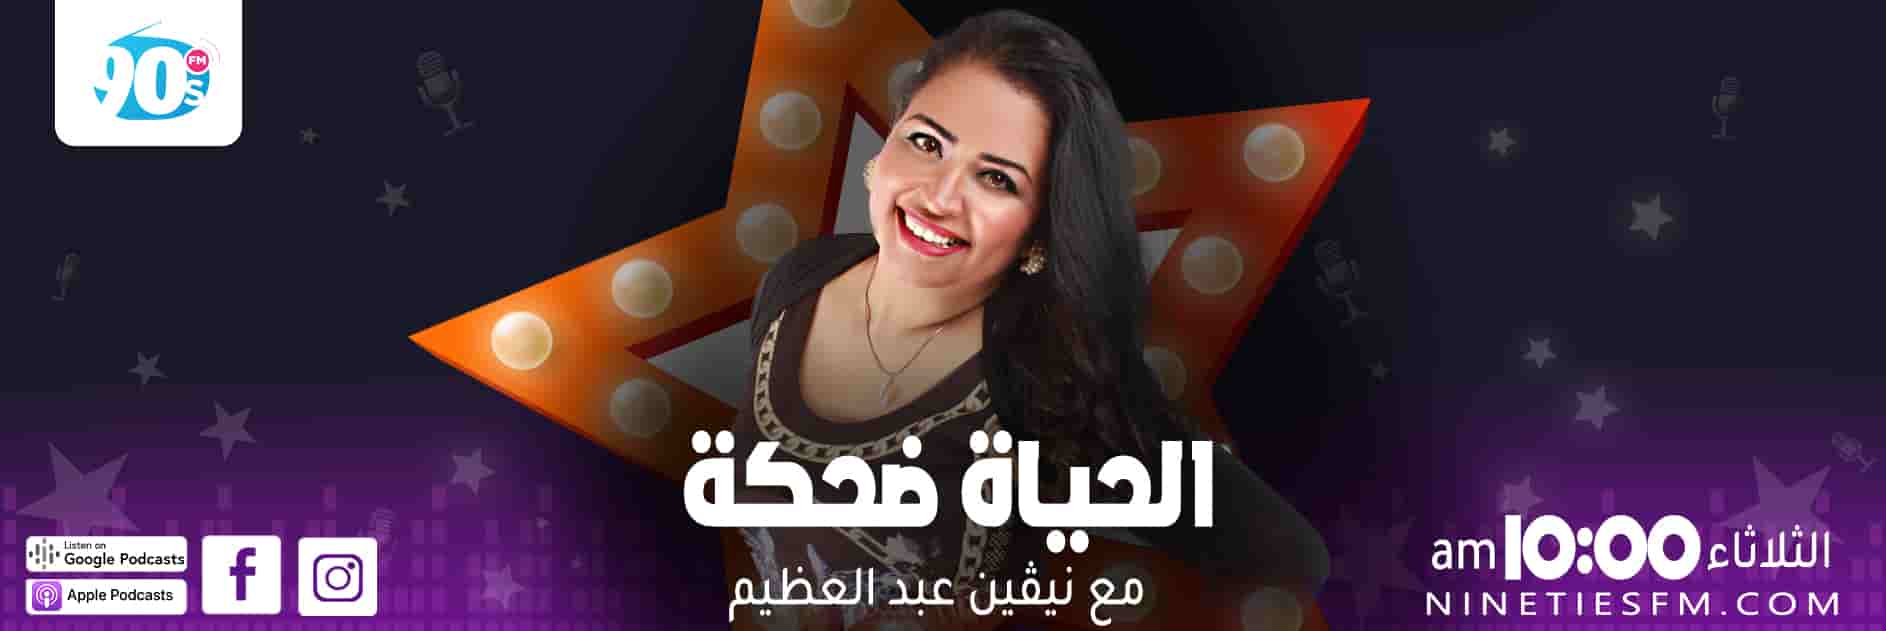 برنامج الحياة ضحكة - مع نيفين عبد العظيم